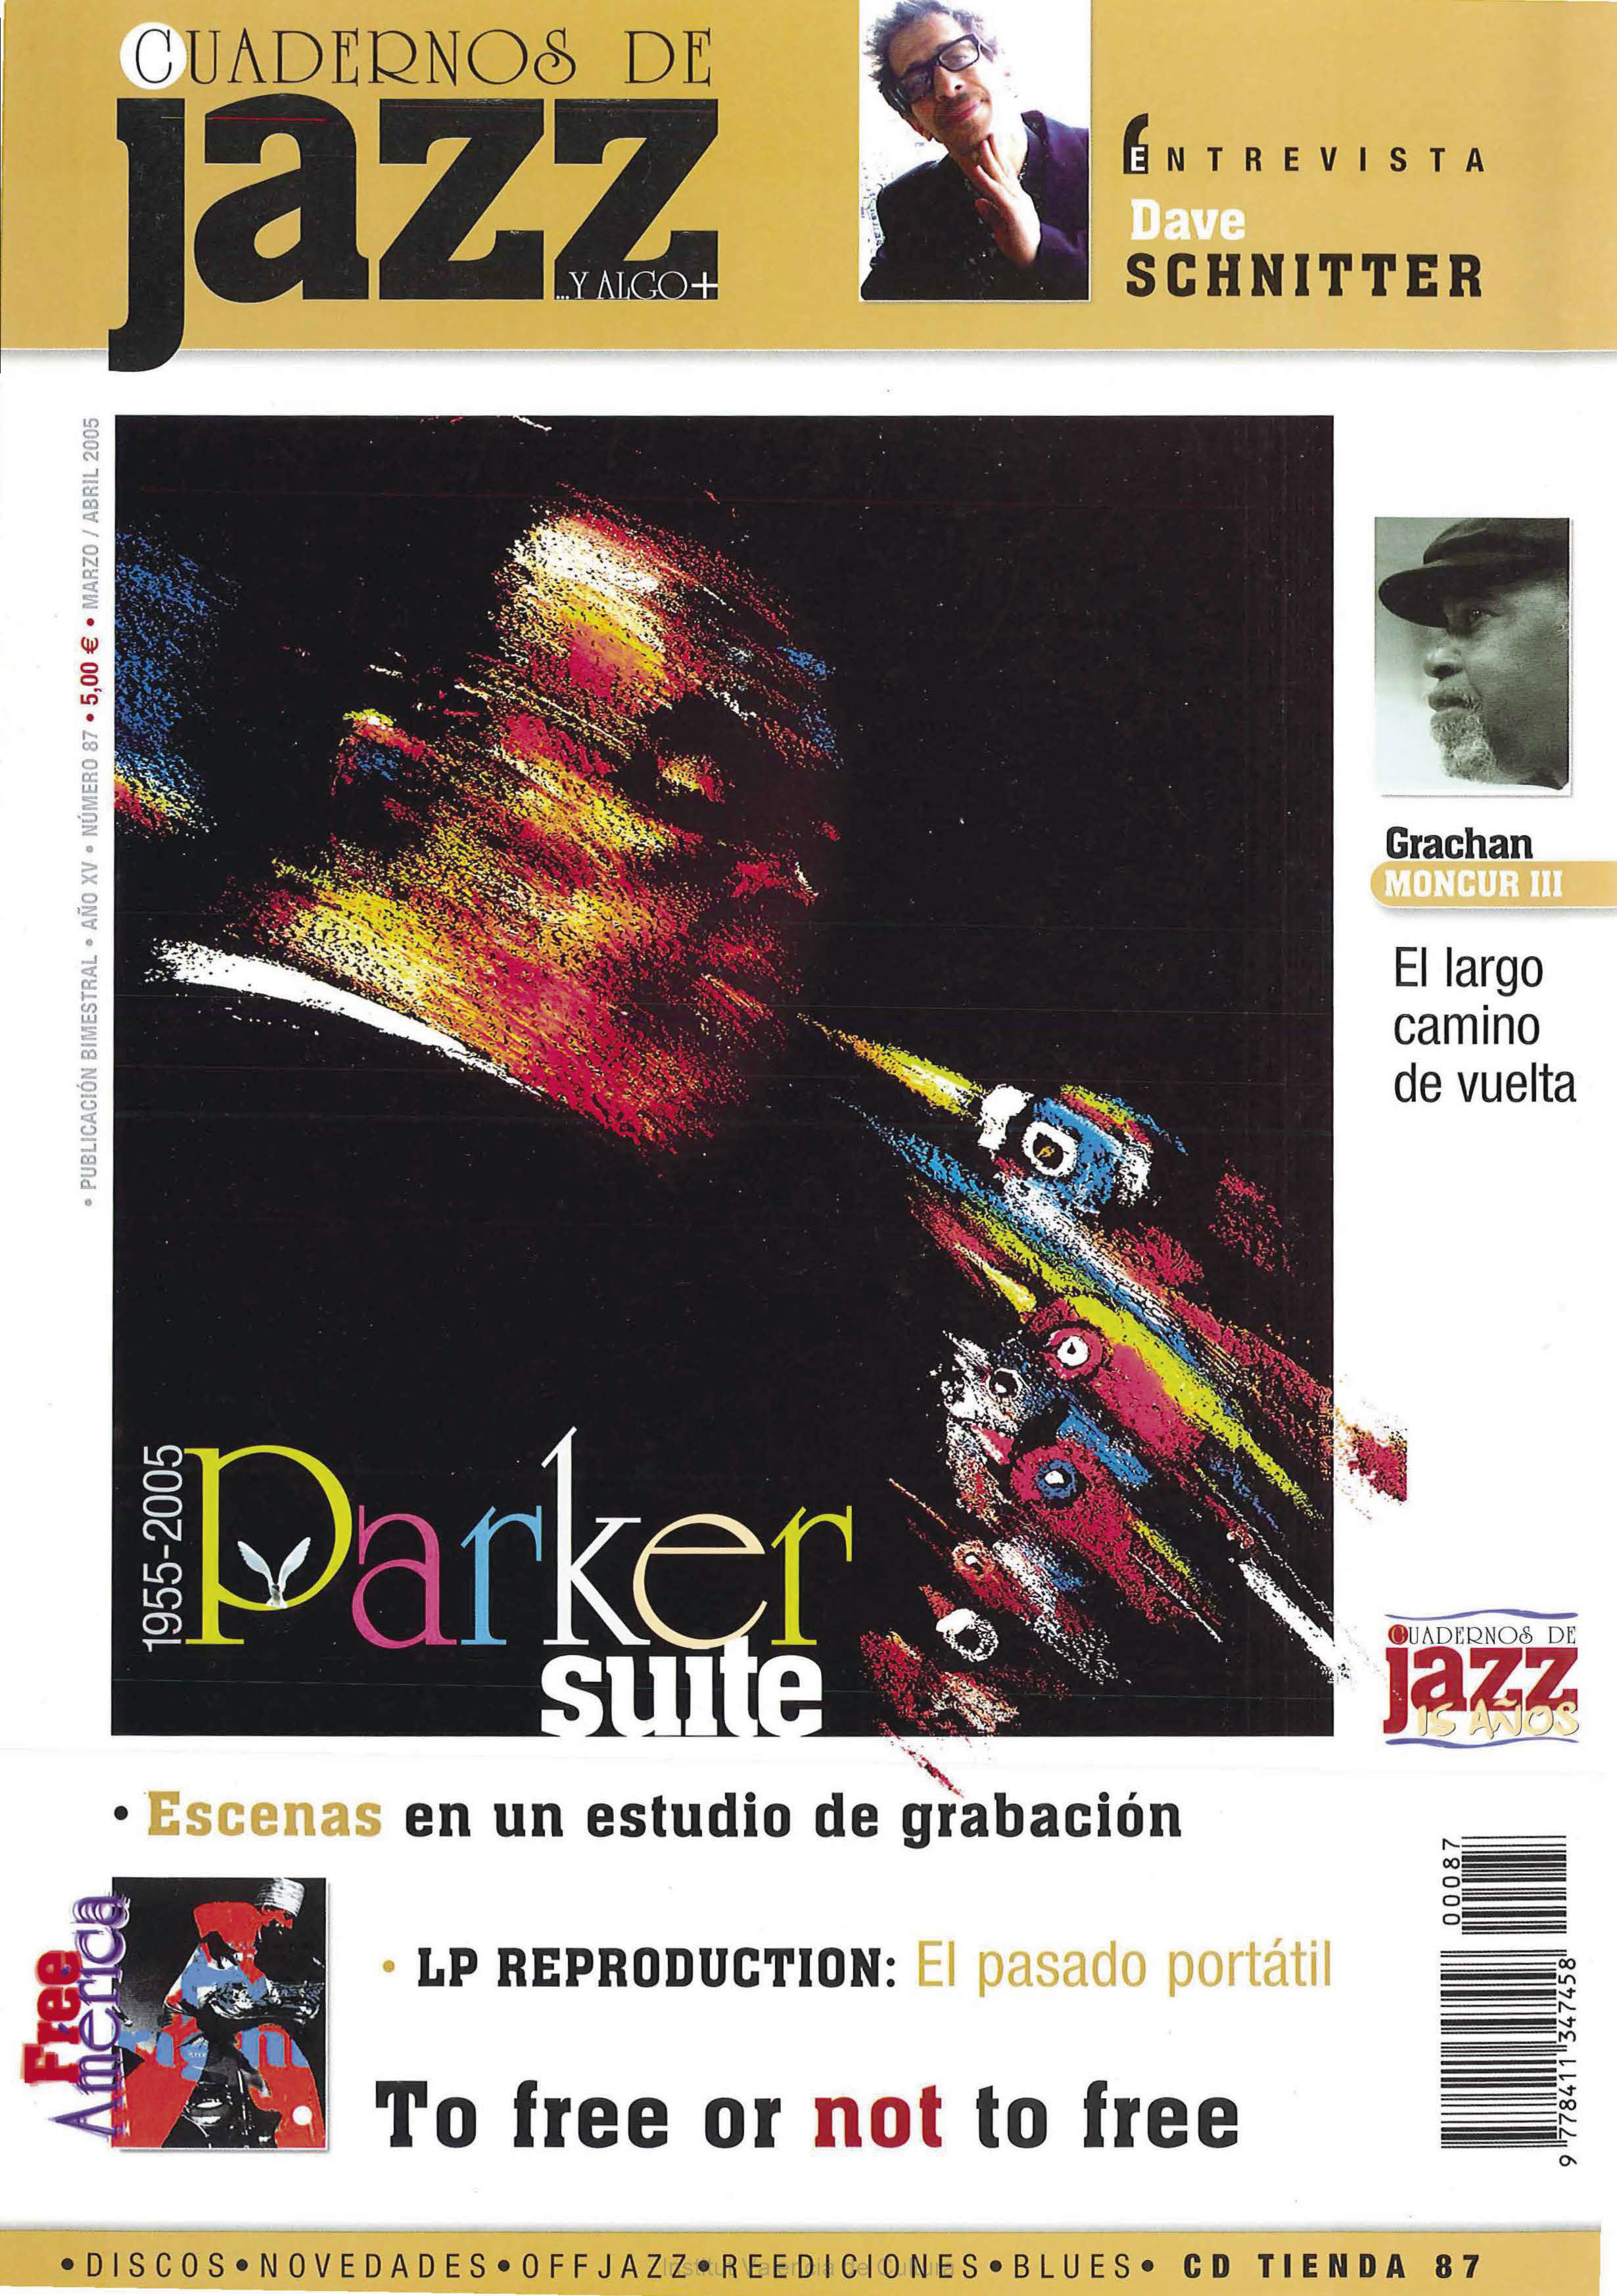 Cubierta del número 87 de la revista Cuadernos de Jazz